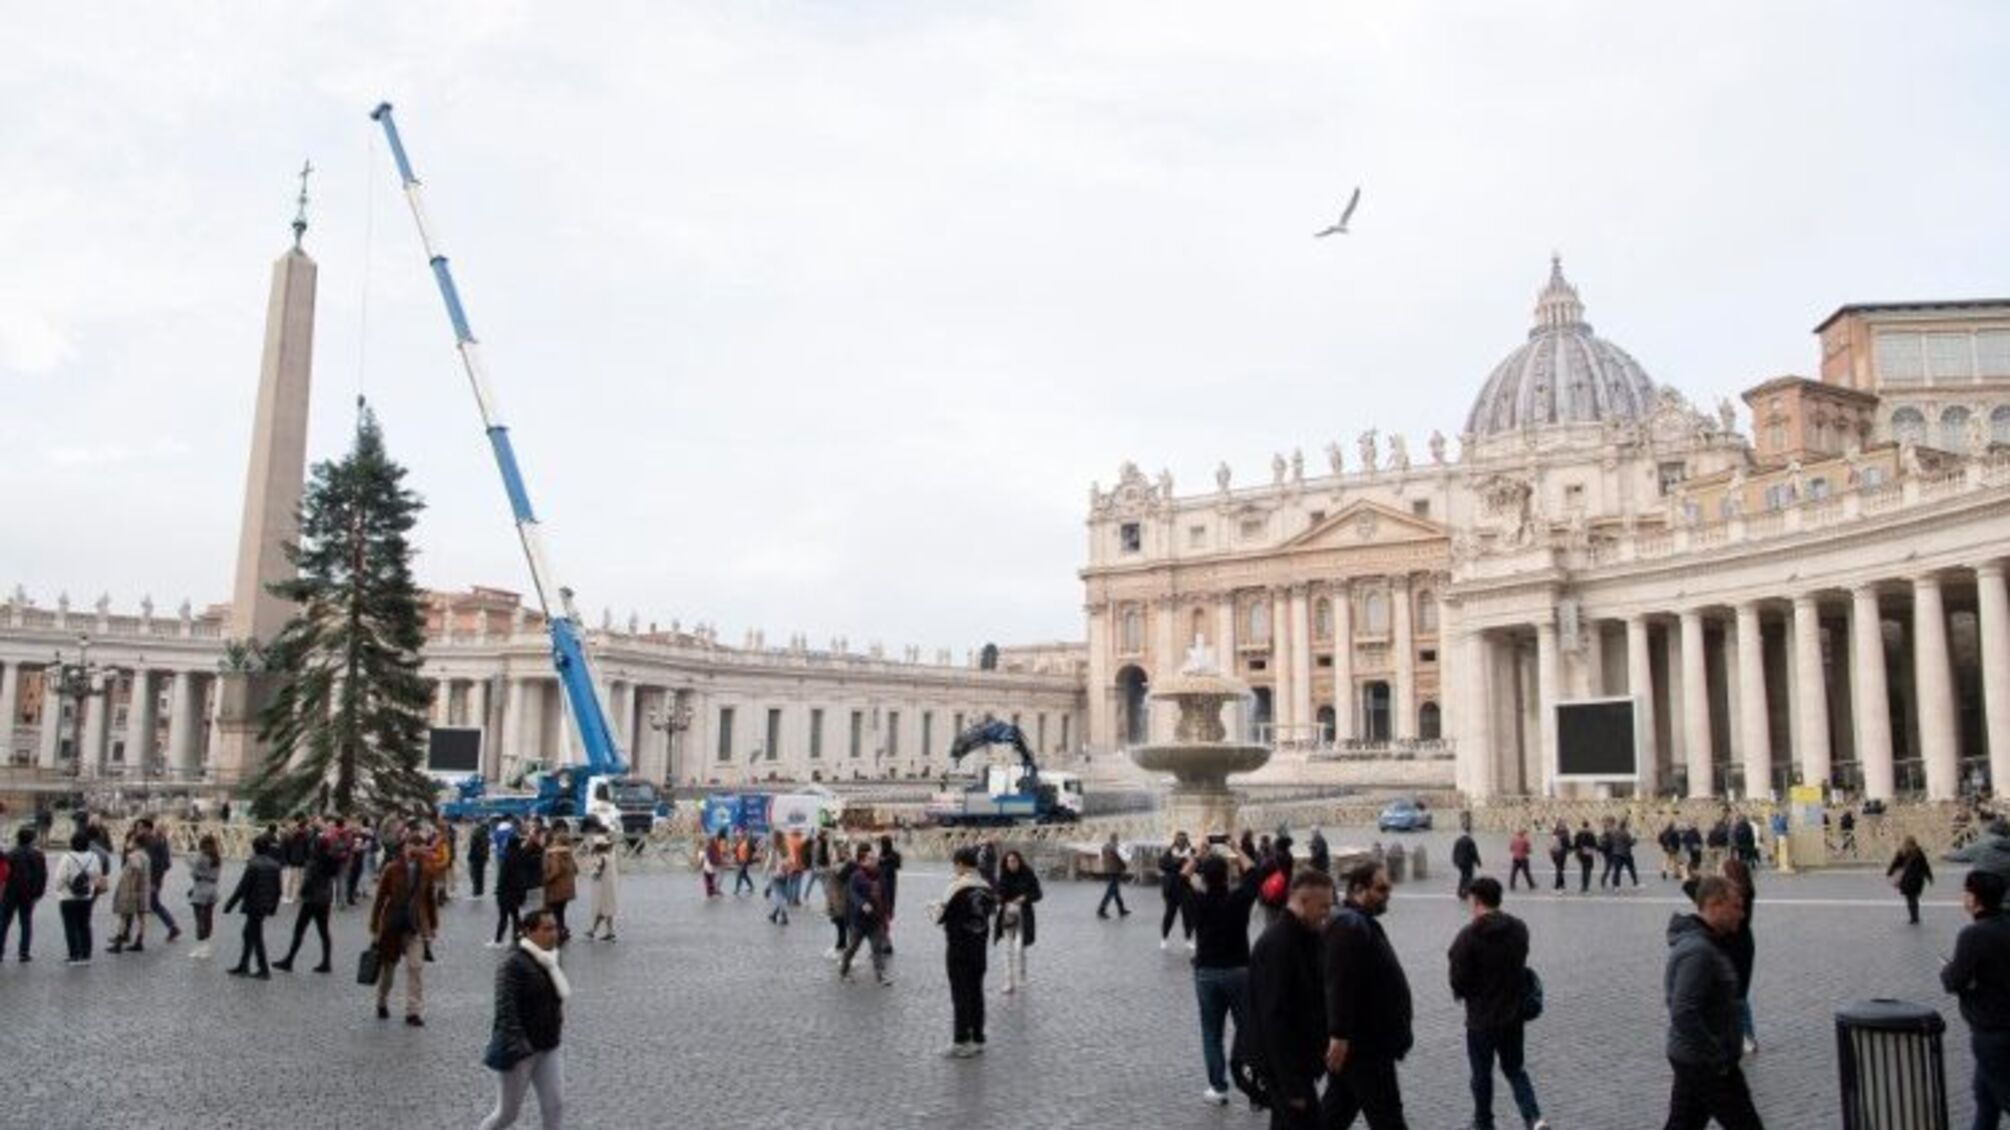 процесс монтажа главной елки на площади Святого Петра в Ватикане